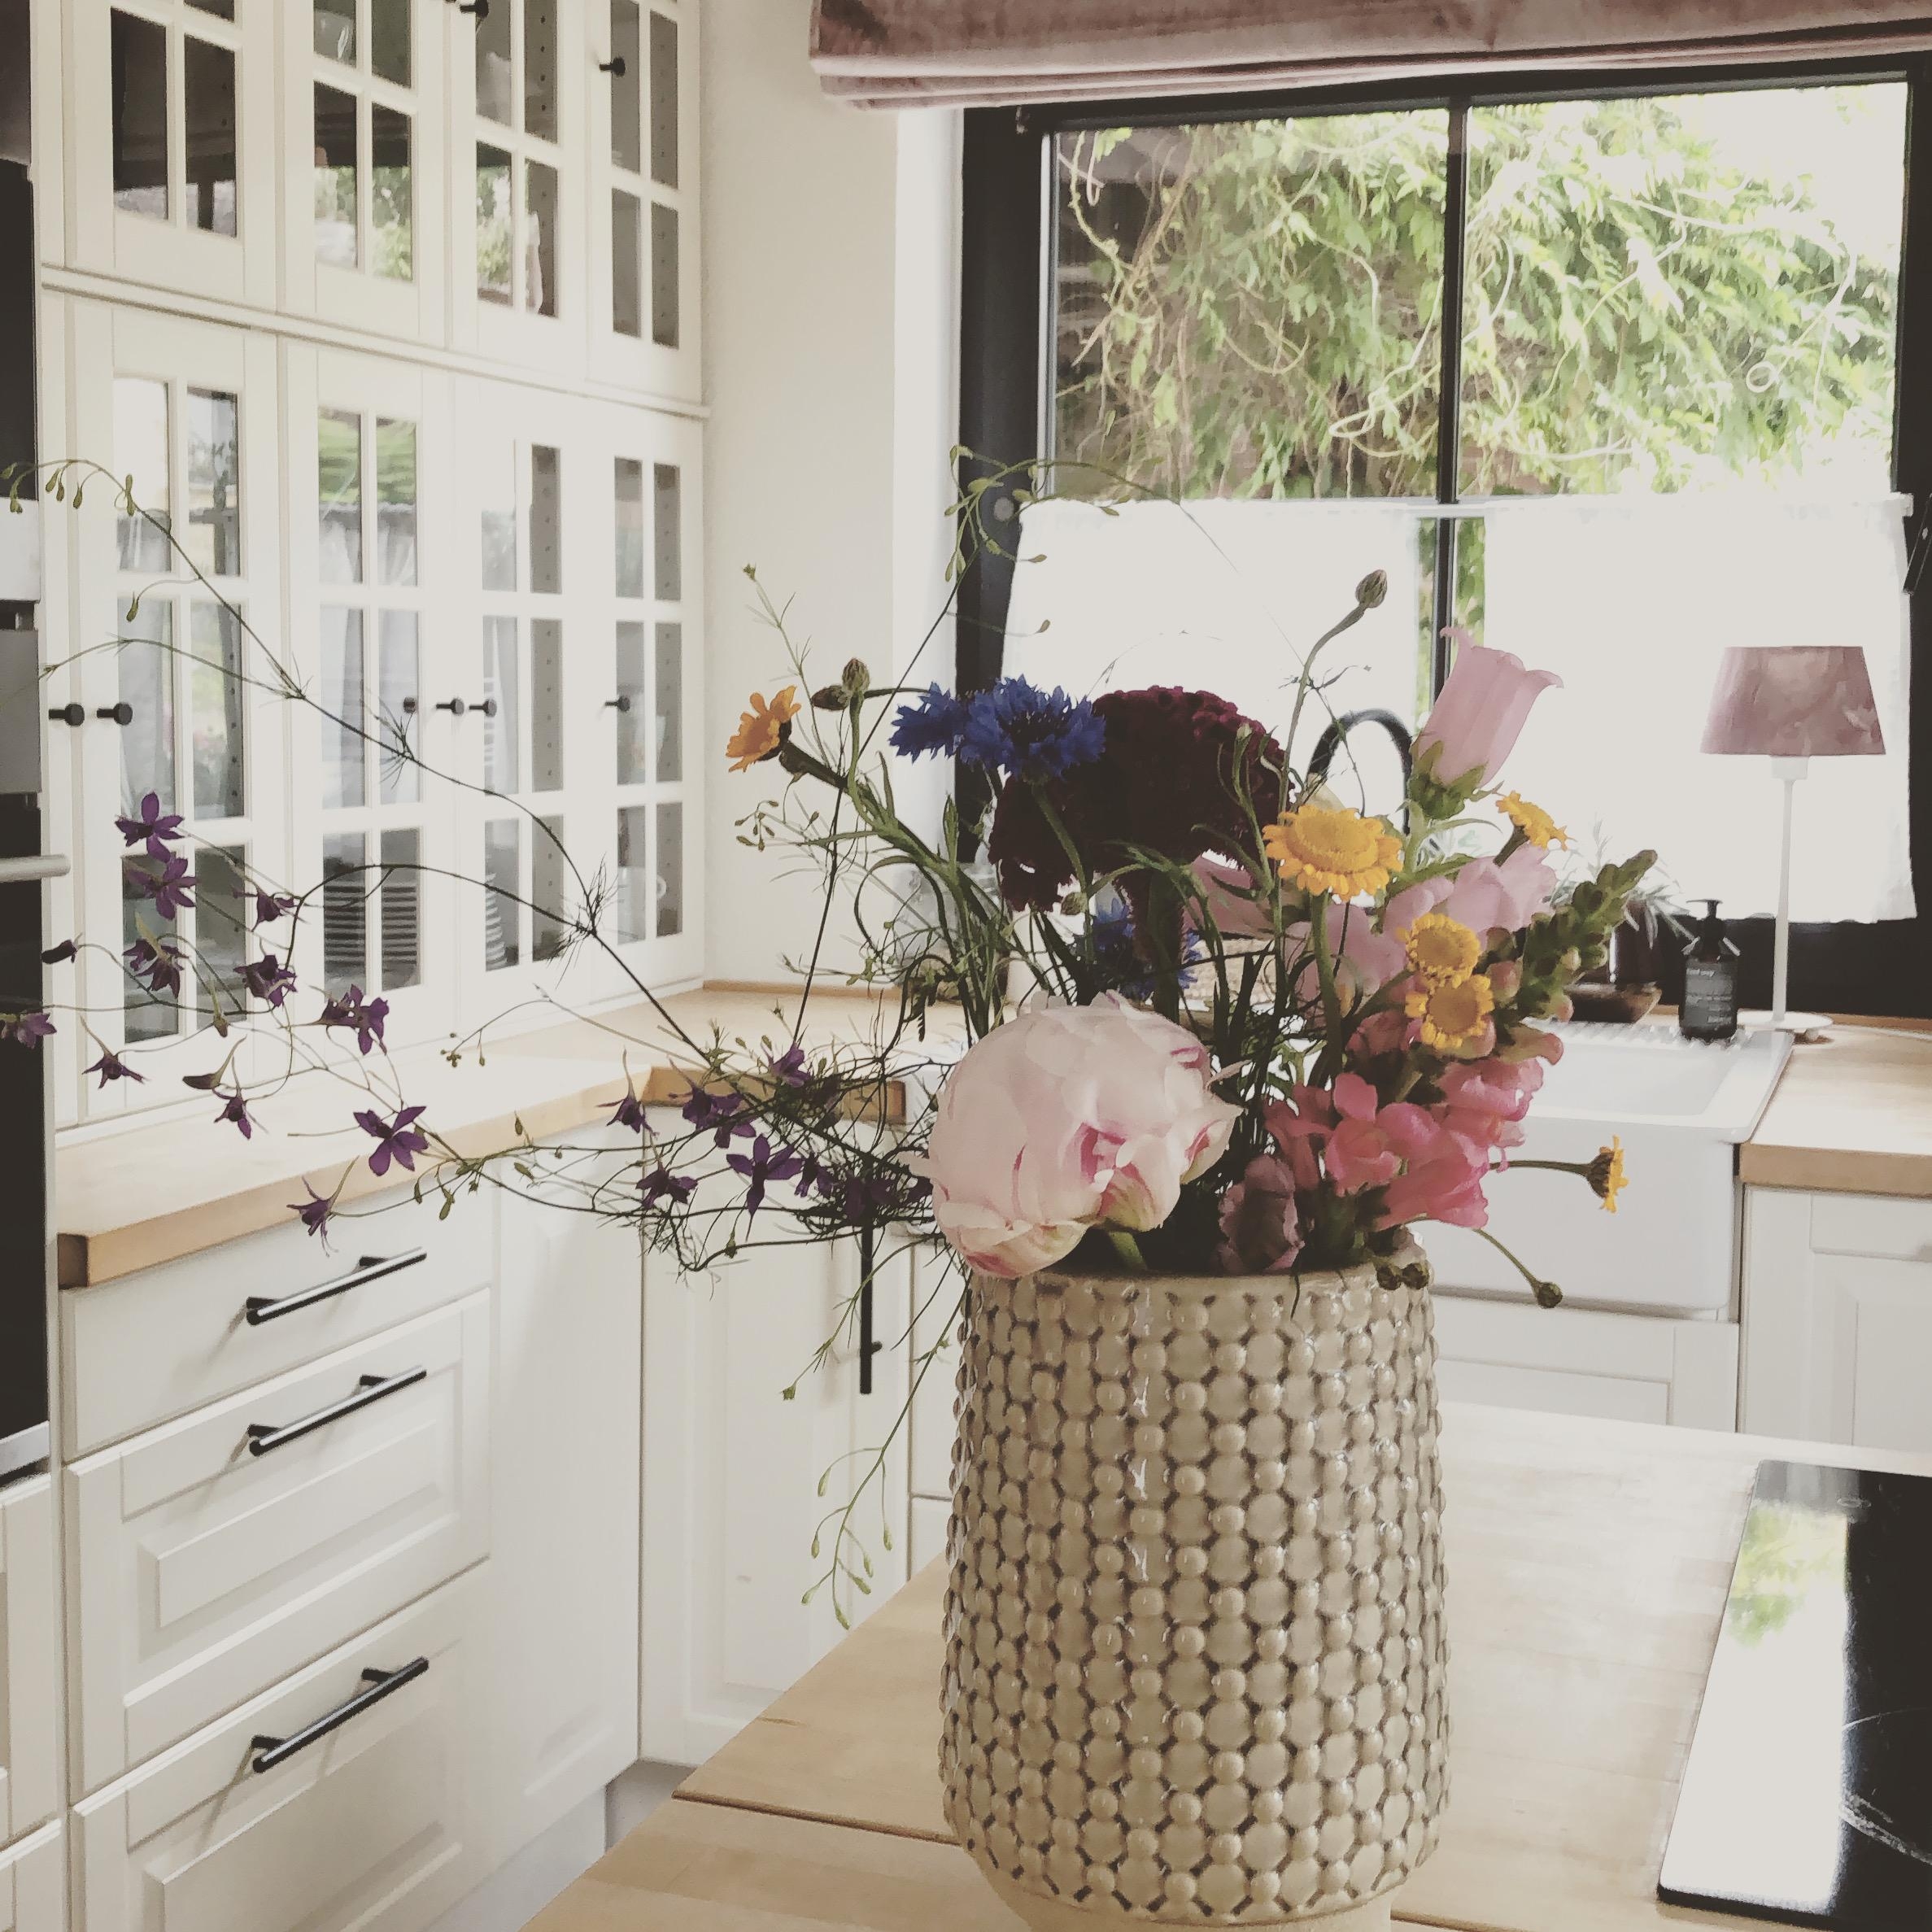 Ich freue mich schon Sooo doll auf die schönen Blumen.
#flowers#flowerlover#kitchenpic